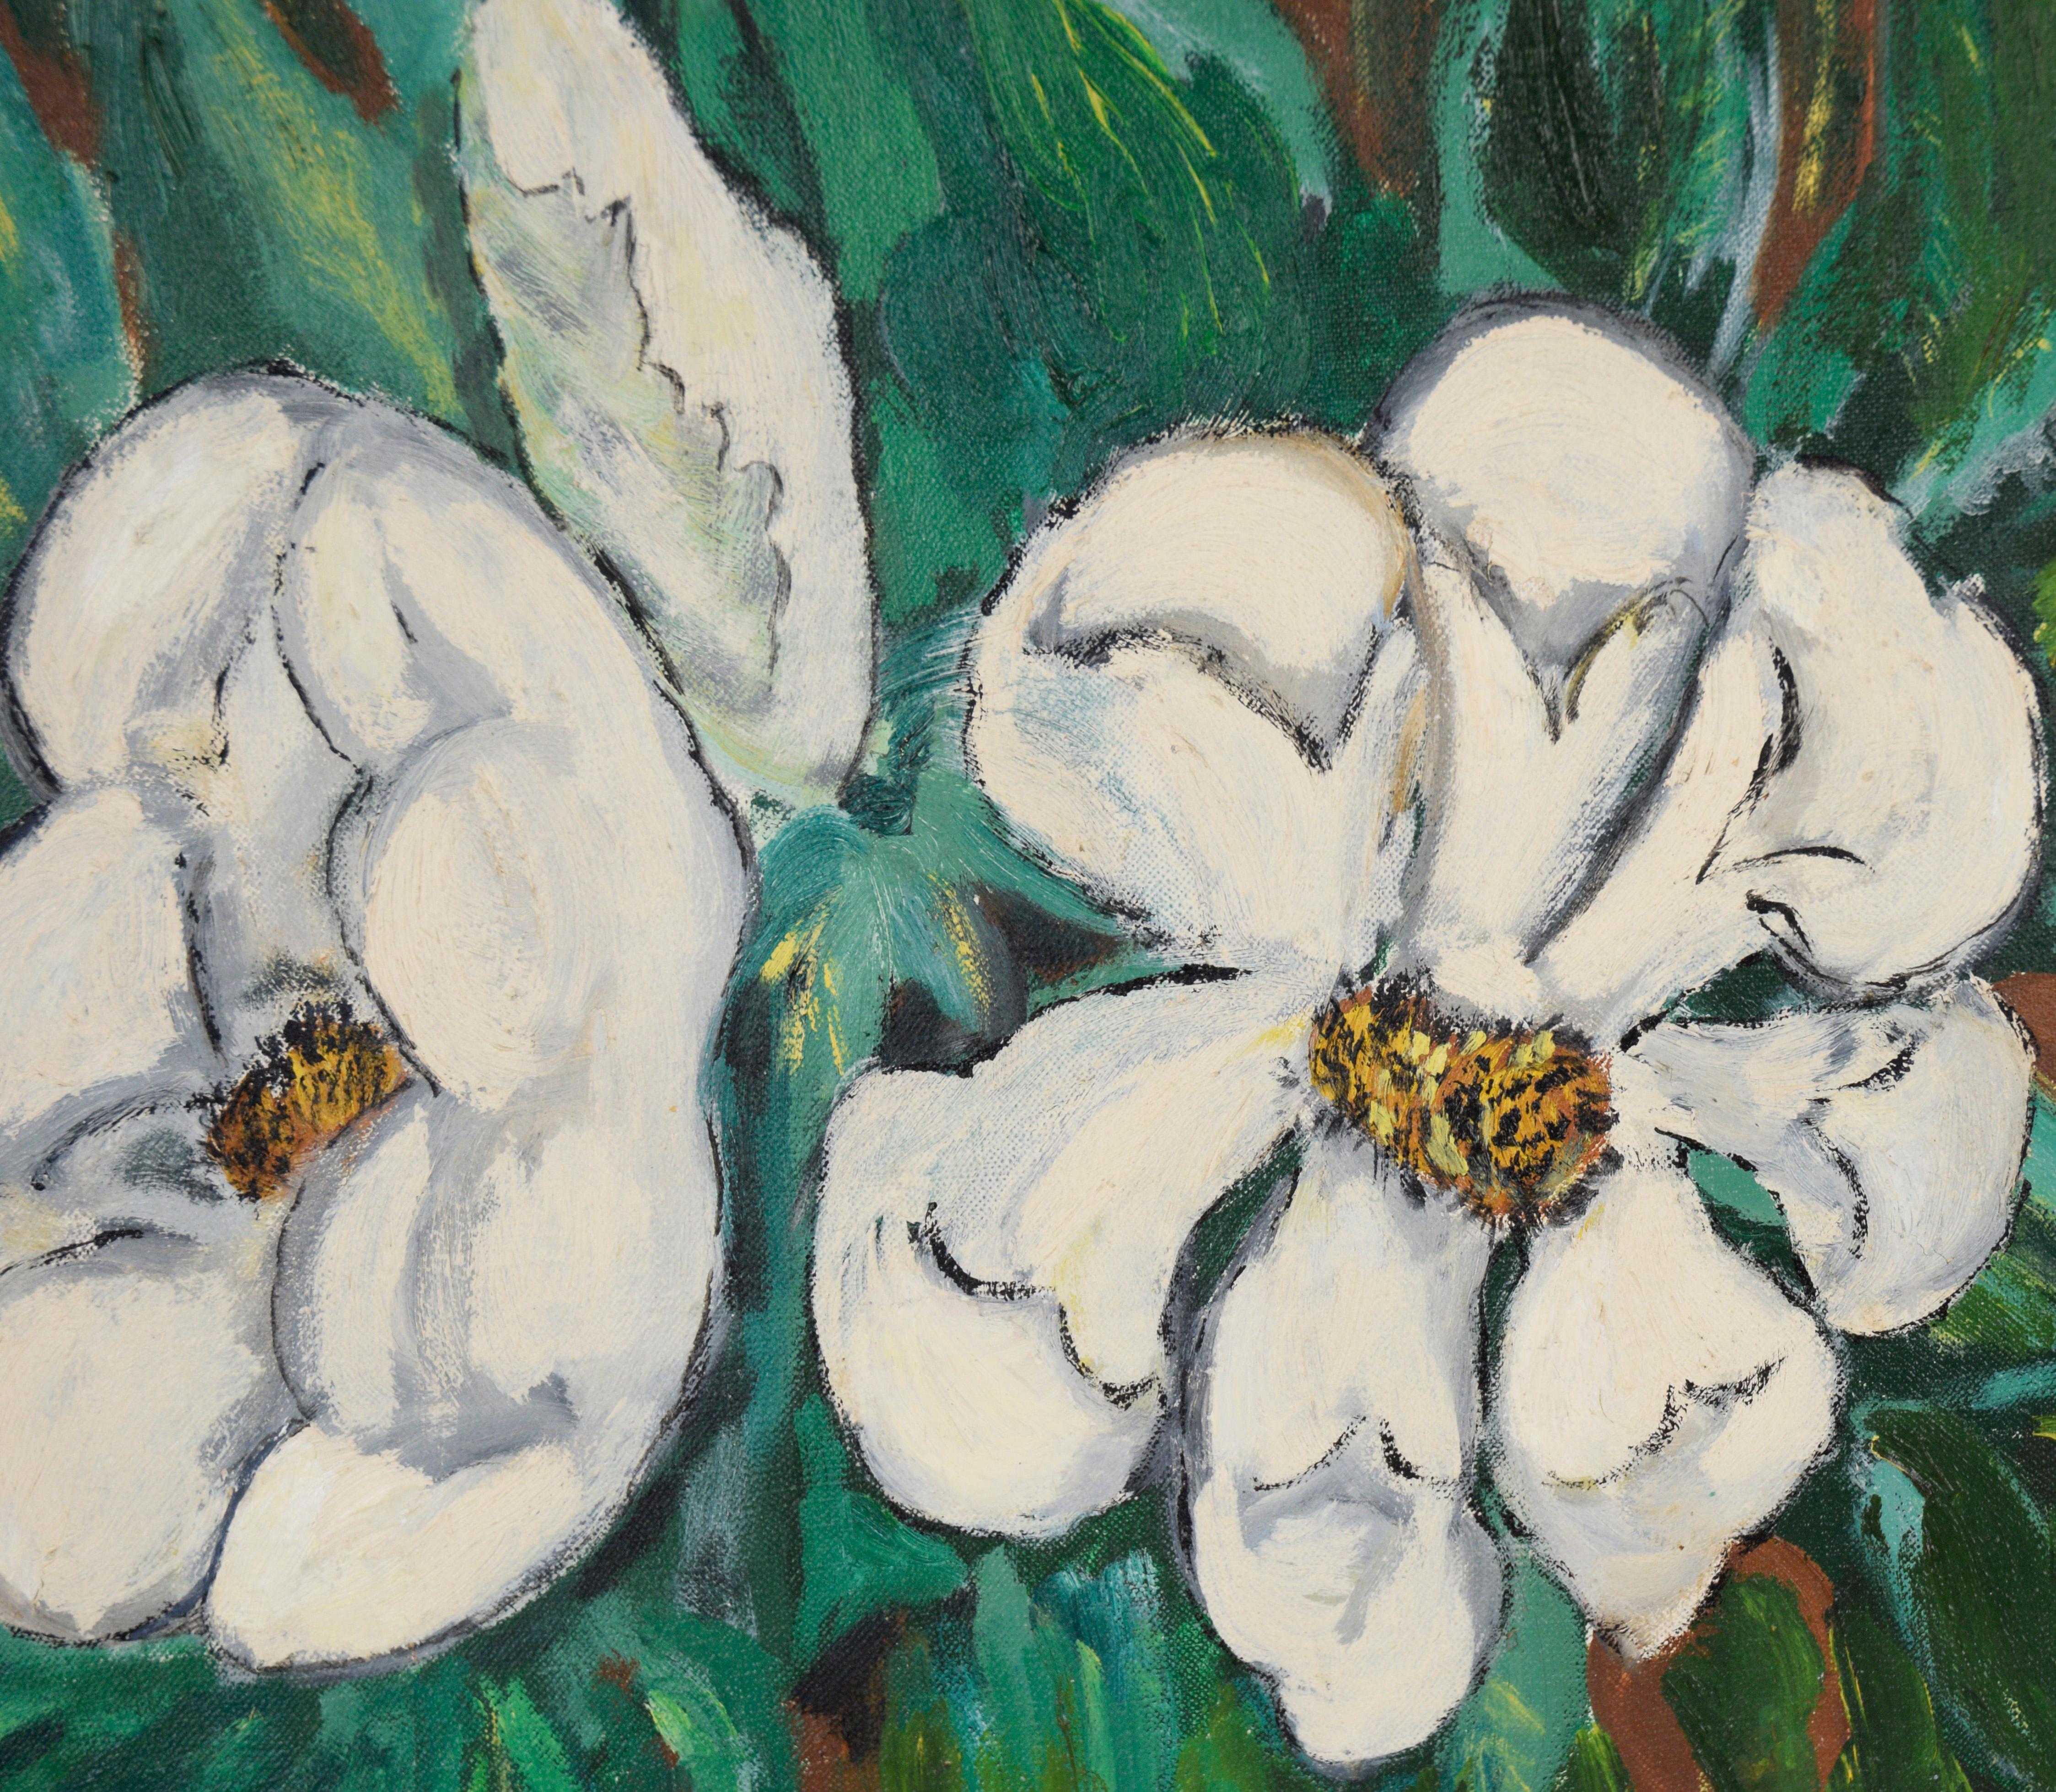 Peinture à l'huile originale moderniste du sud de Magnolia

De riches teintes de vert émeraude et des reflets jaunes doux encadrent les magnolias du Sud (